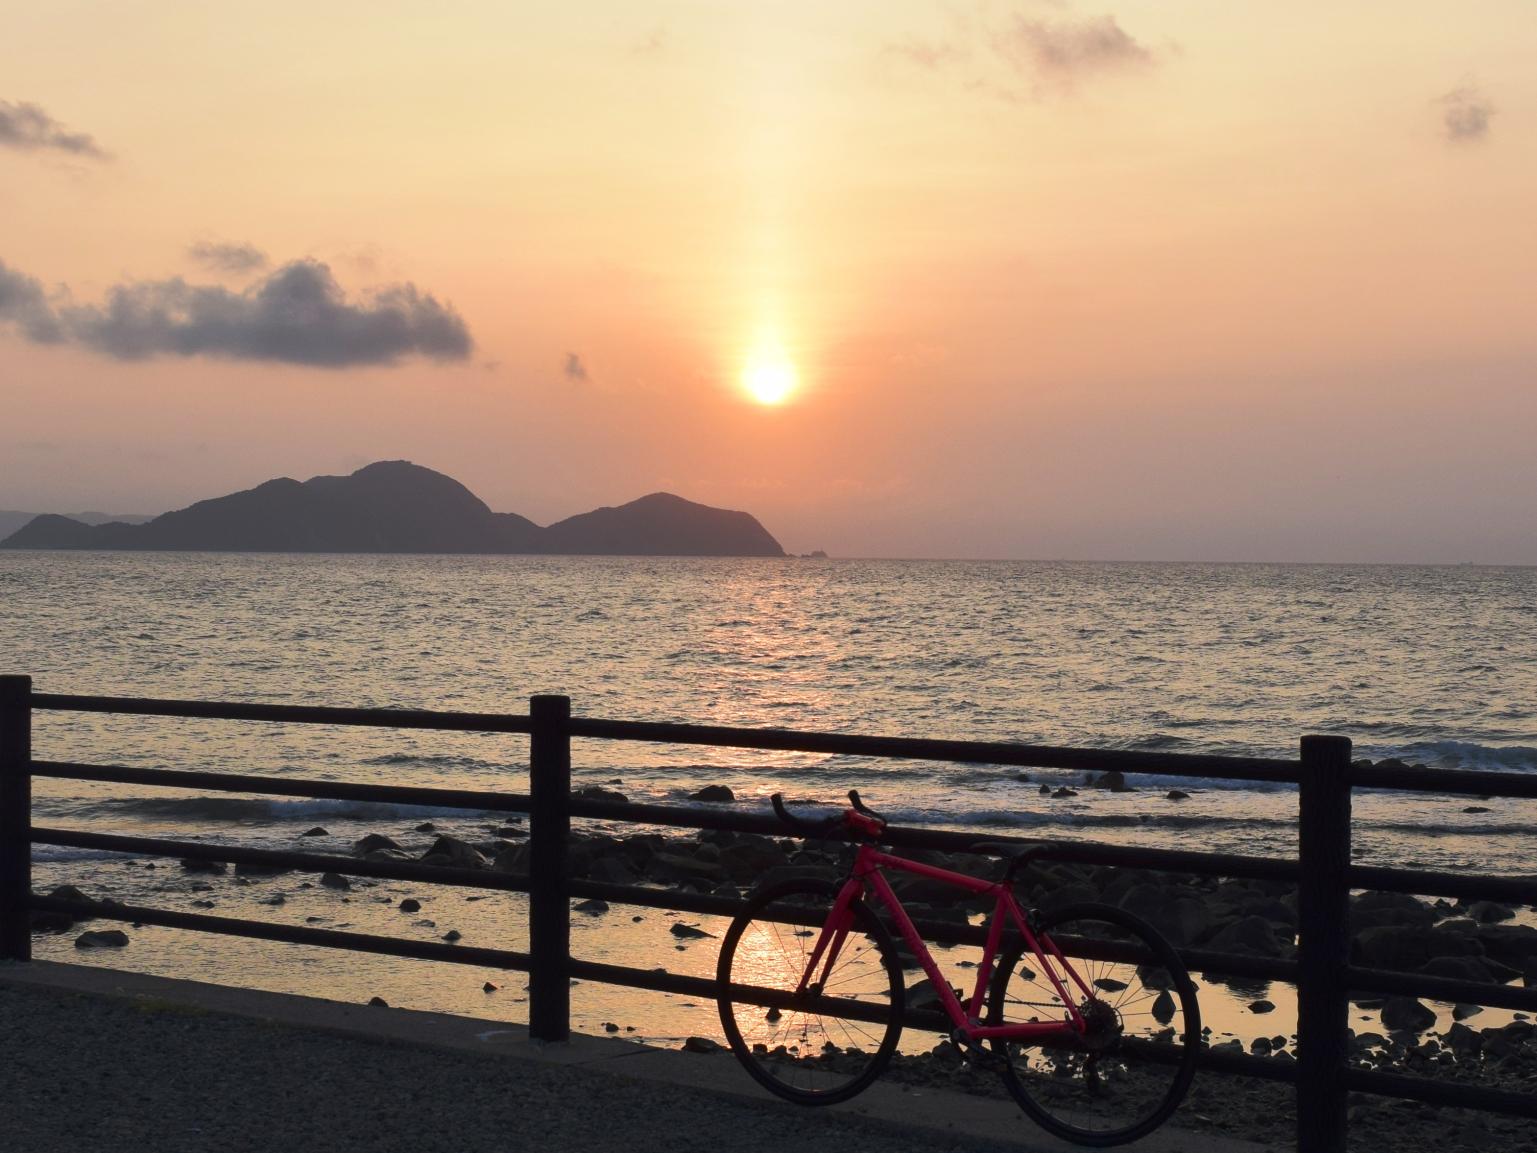 夕陽十分美麗的運賀·宗像自行車道